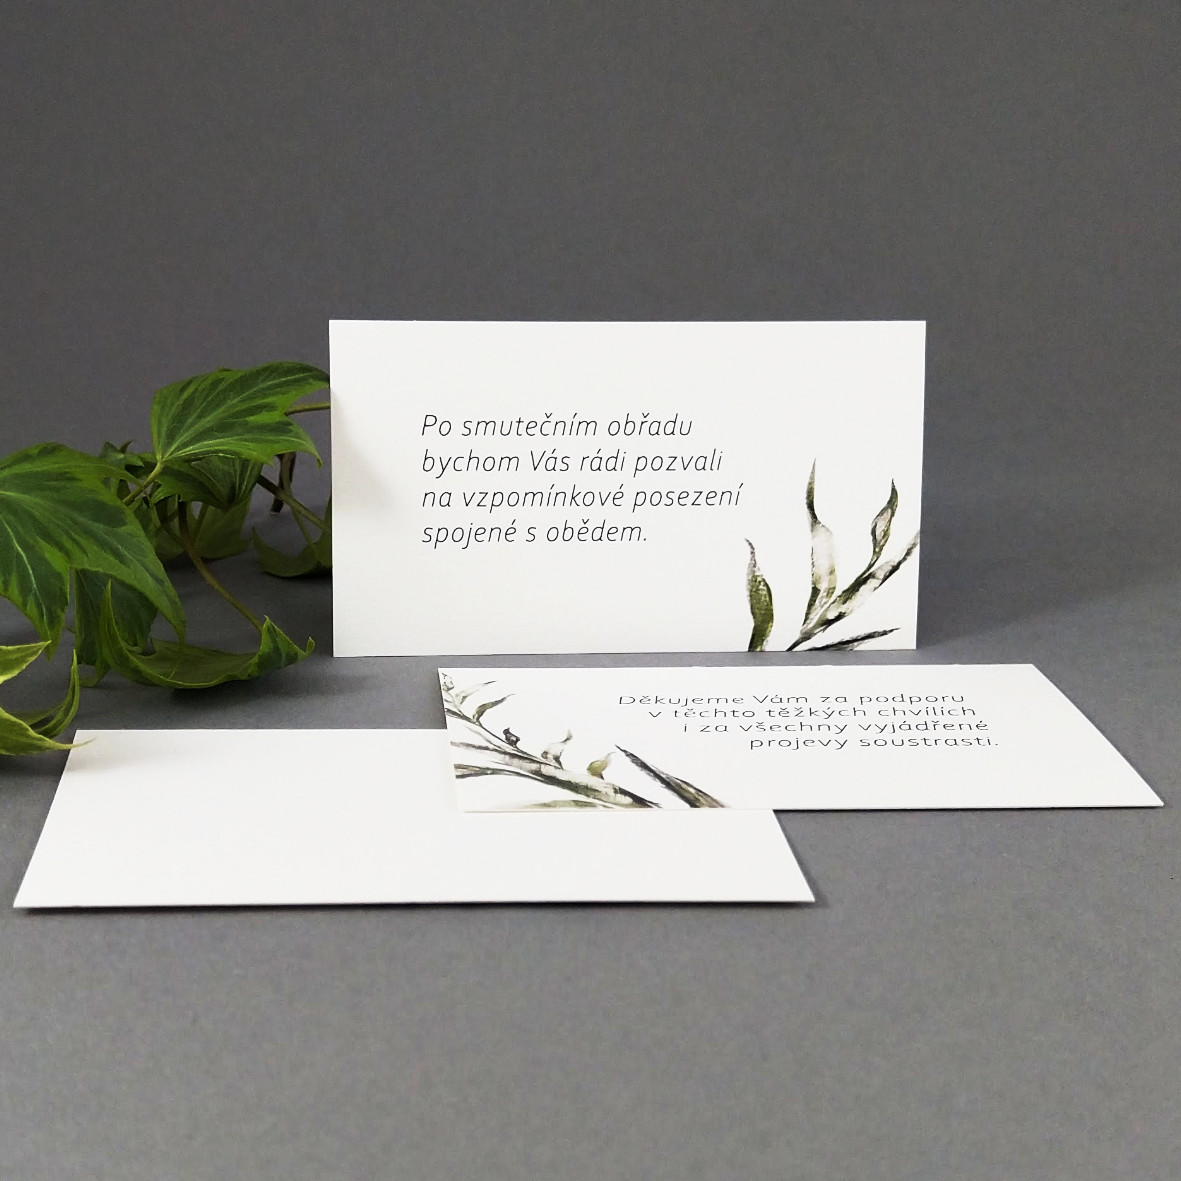 Pozvánka, informační karta – s motivem ratolesti, formát 85 × 55 mm, jednostranná